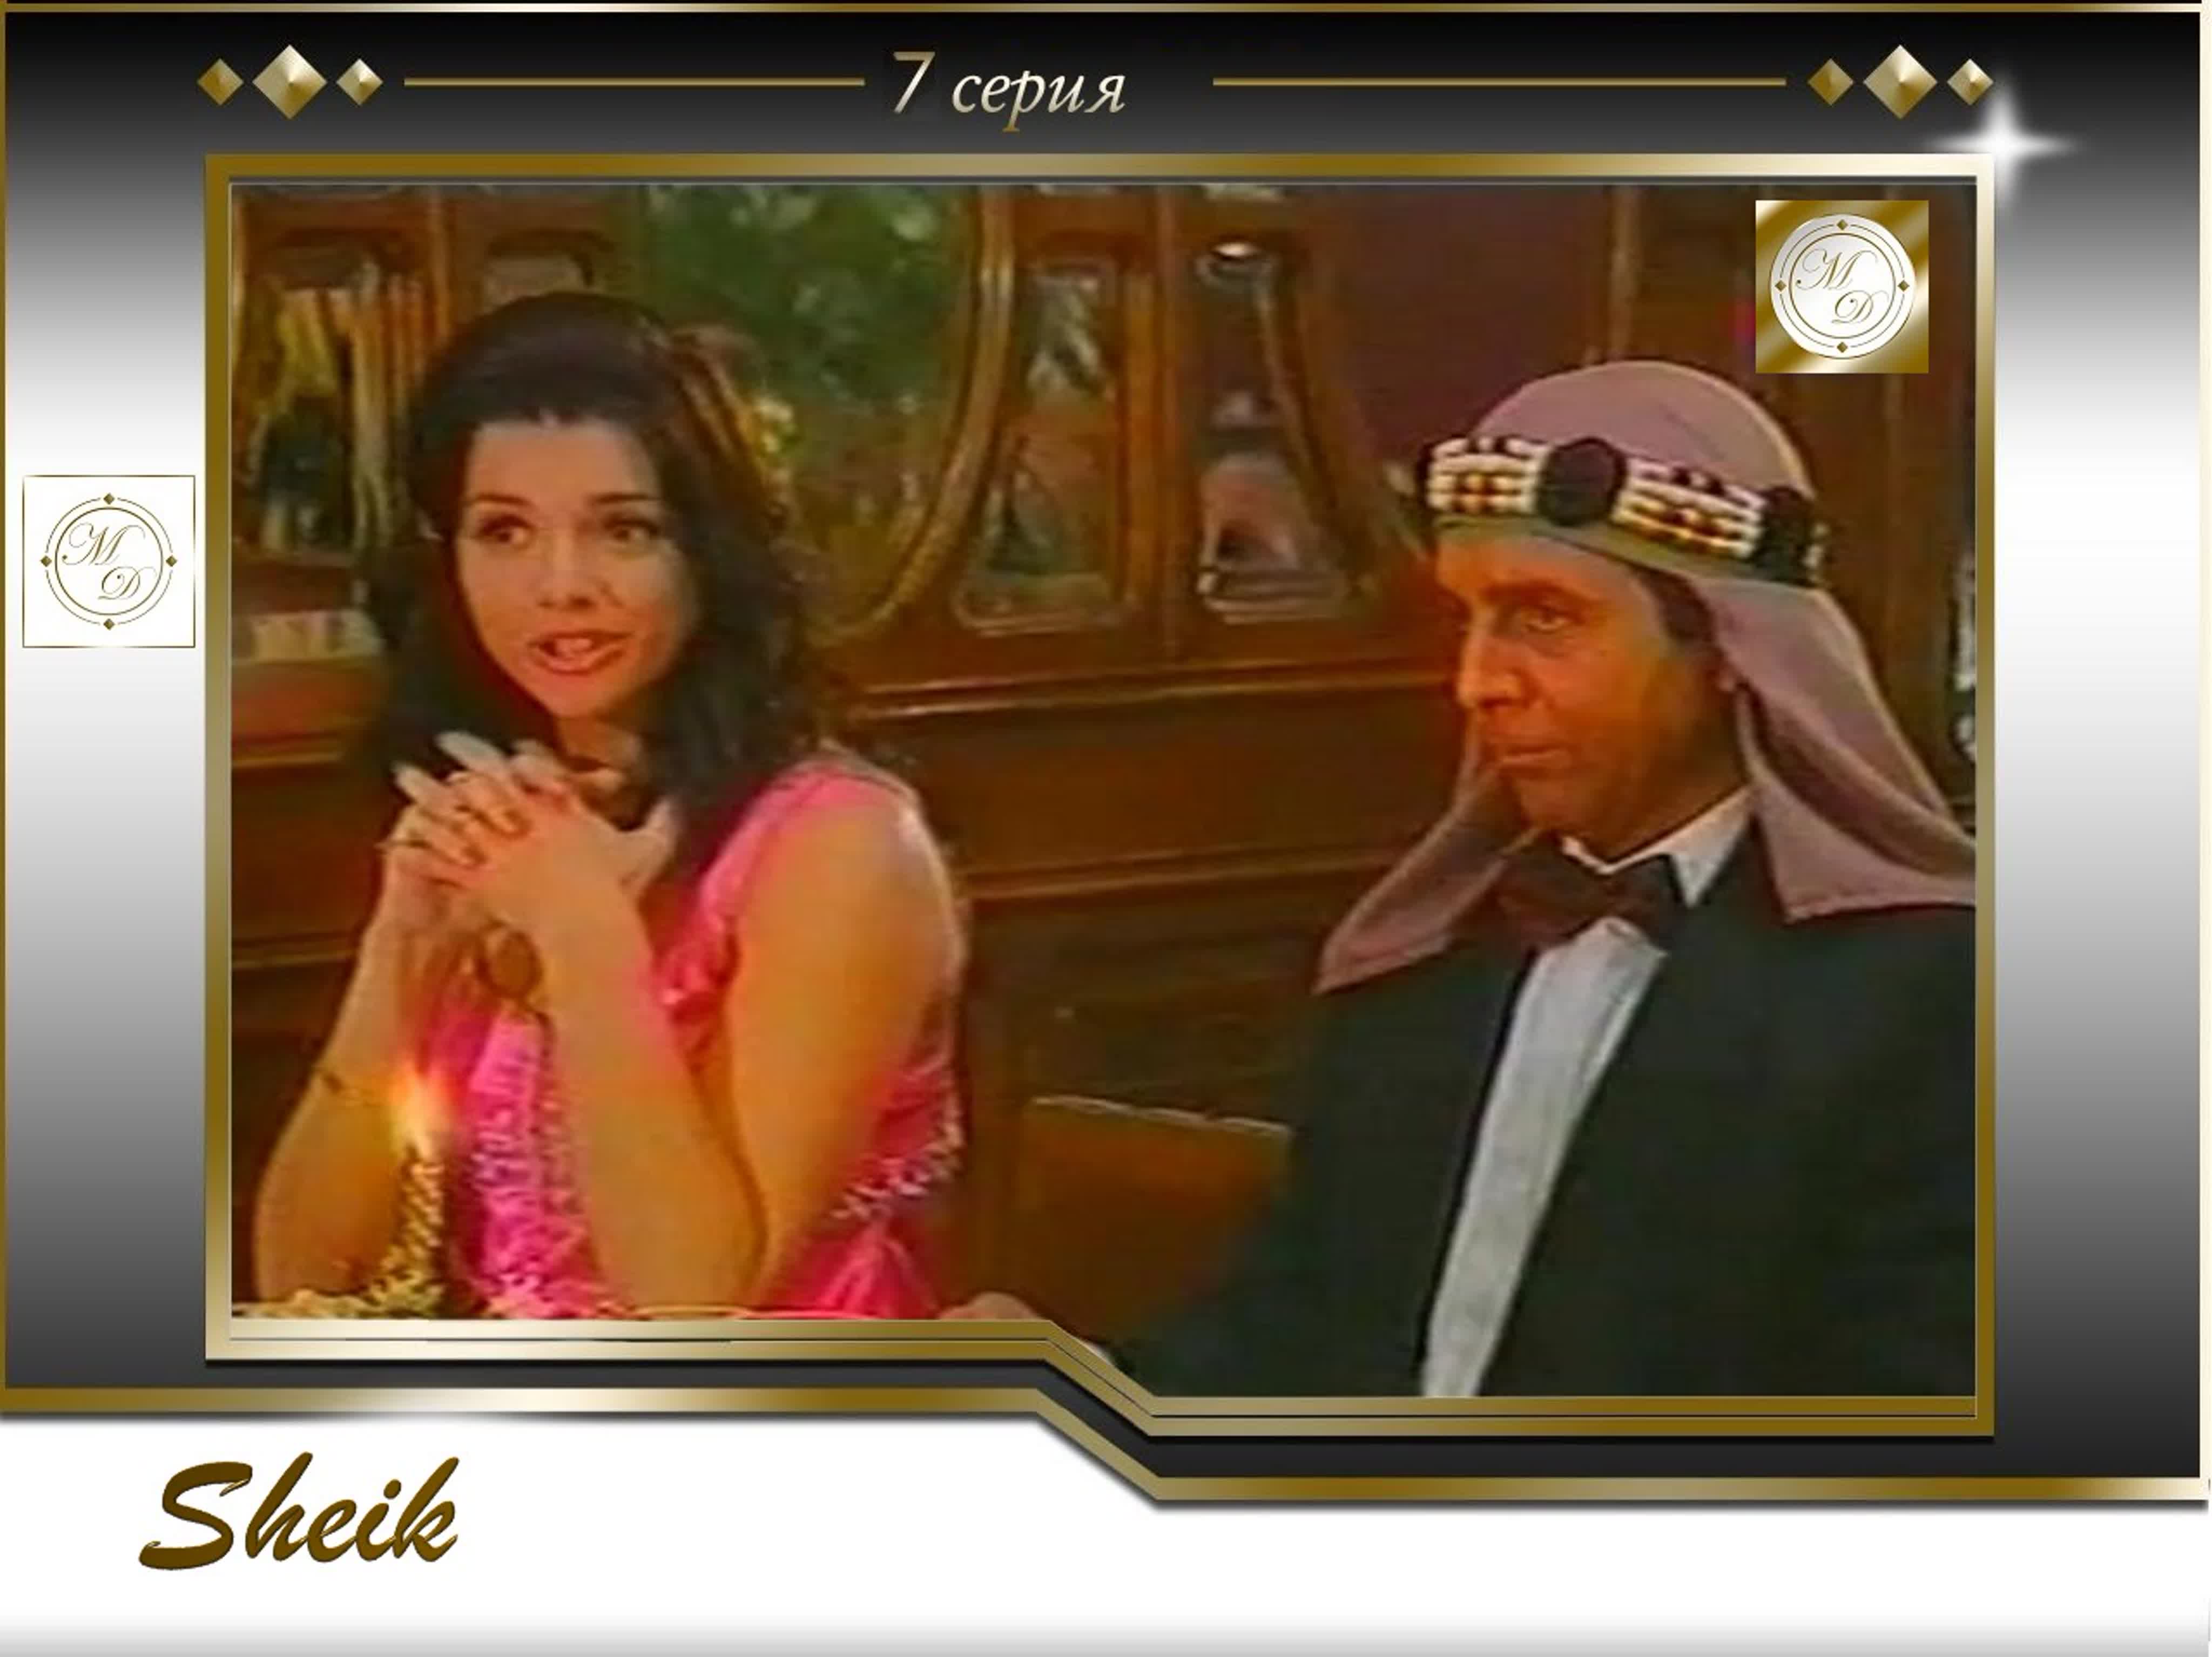 Sheik (Canal 13 Argentina 1995)